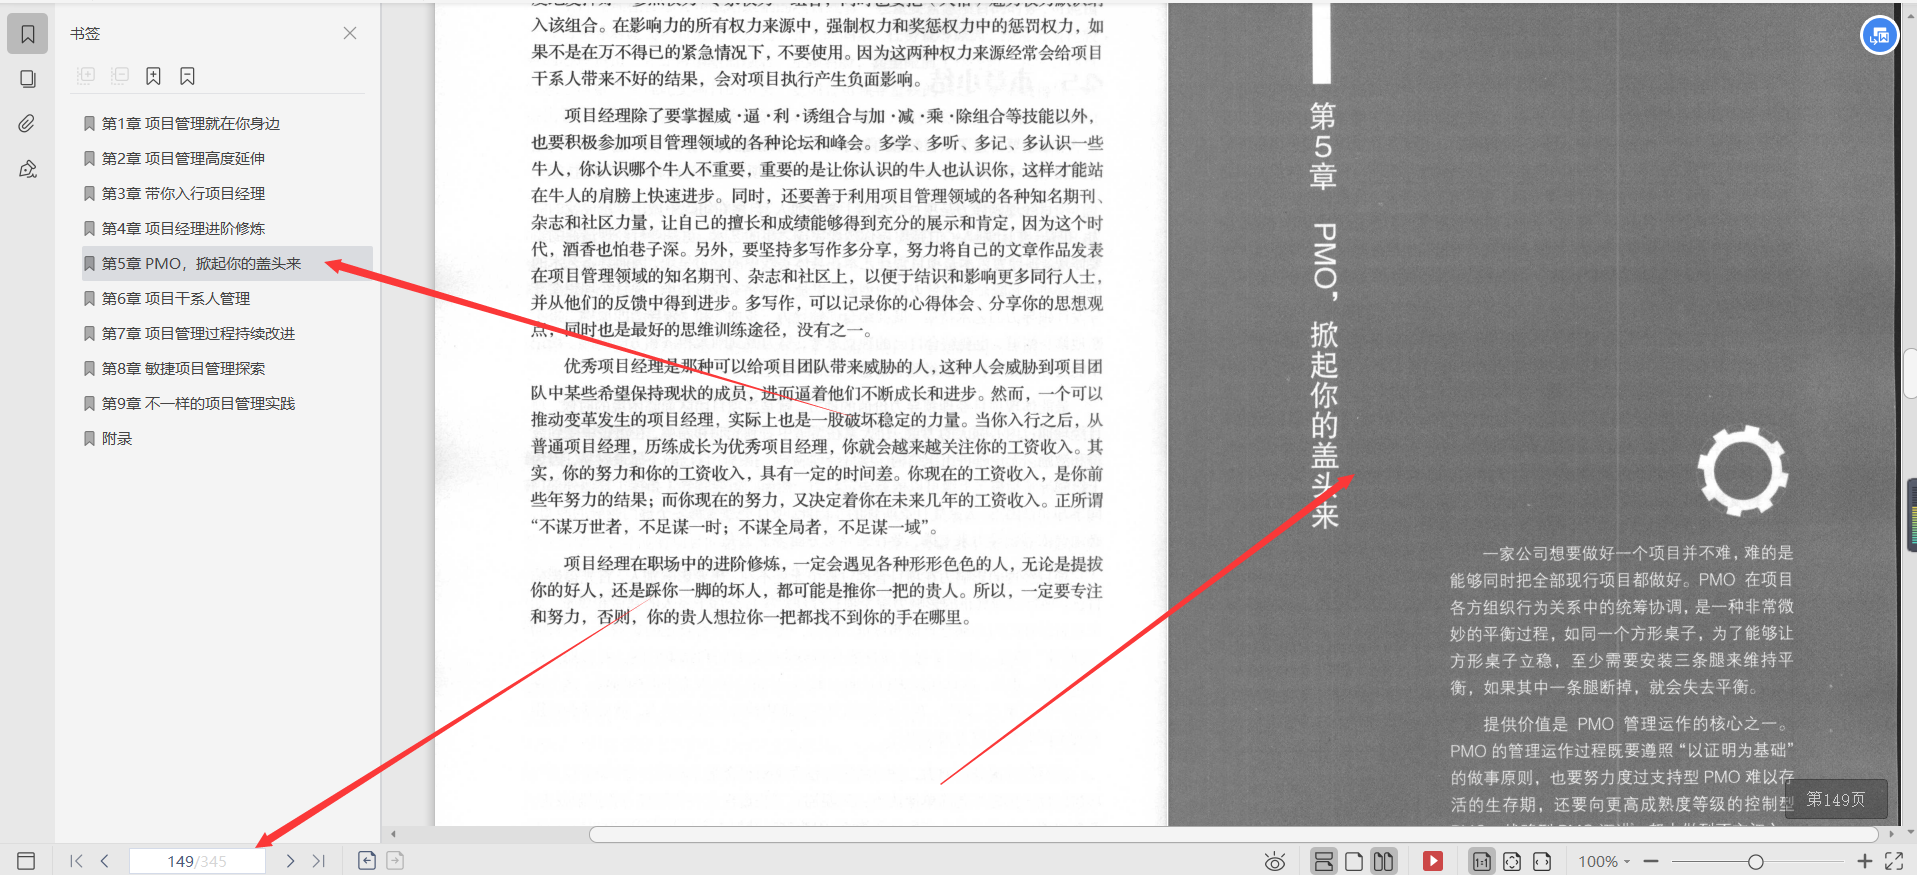 京东T8专家用96个内容就把互联网项目管理实践精粹PDF给讲明白了